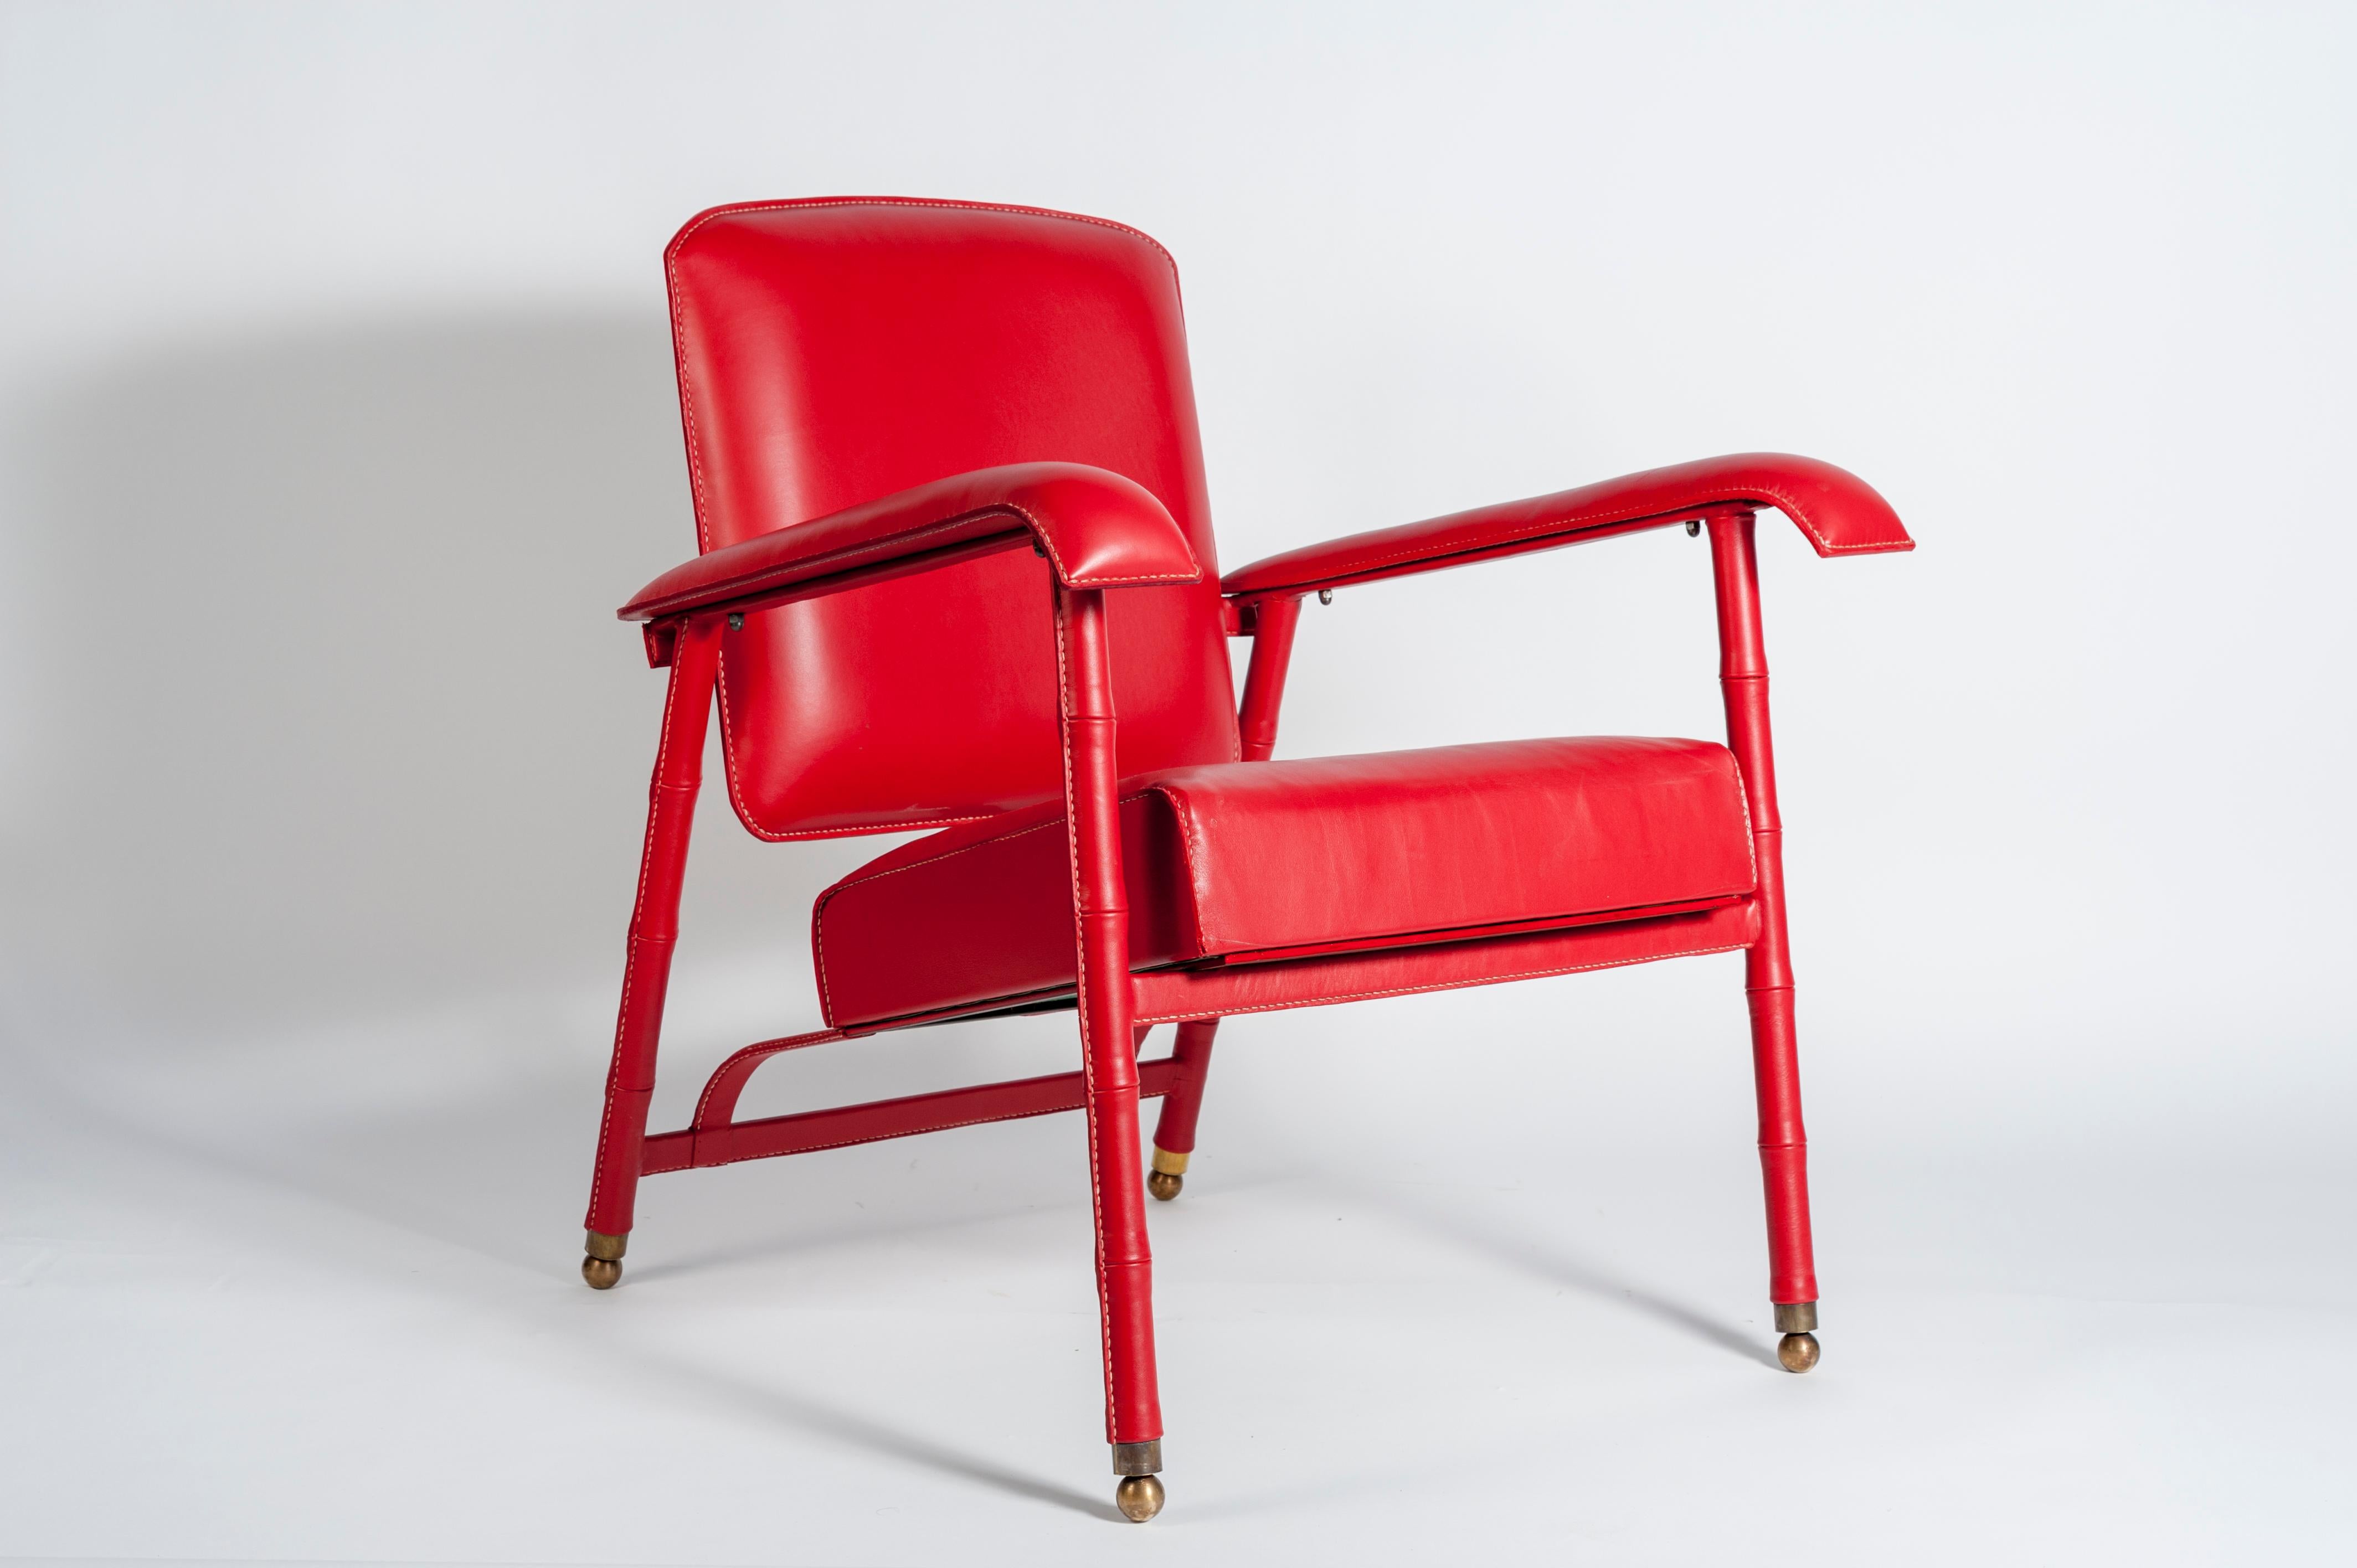 Rare paire de fauteuils en cuir surpiqué de Jacques Adnet
1950's
France.
 